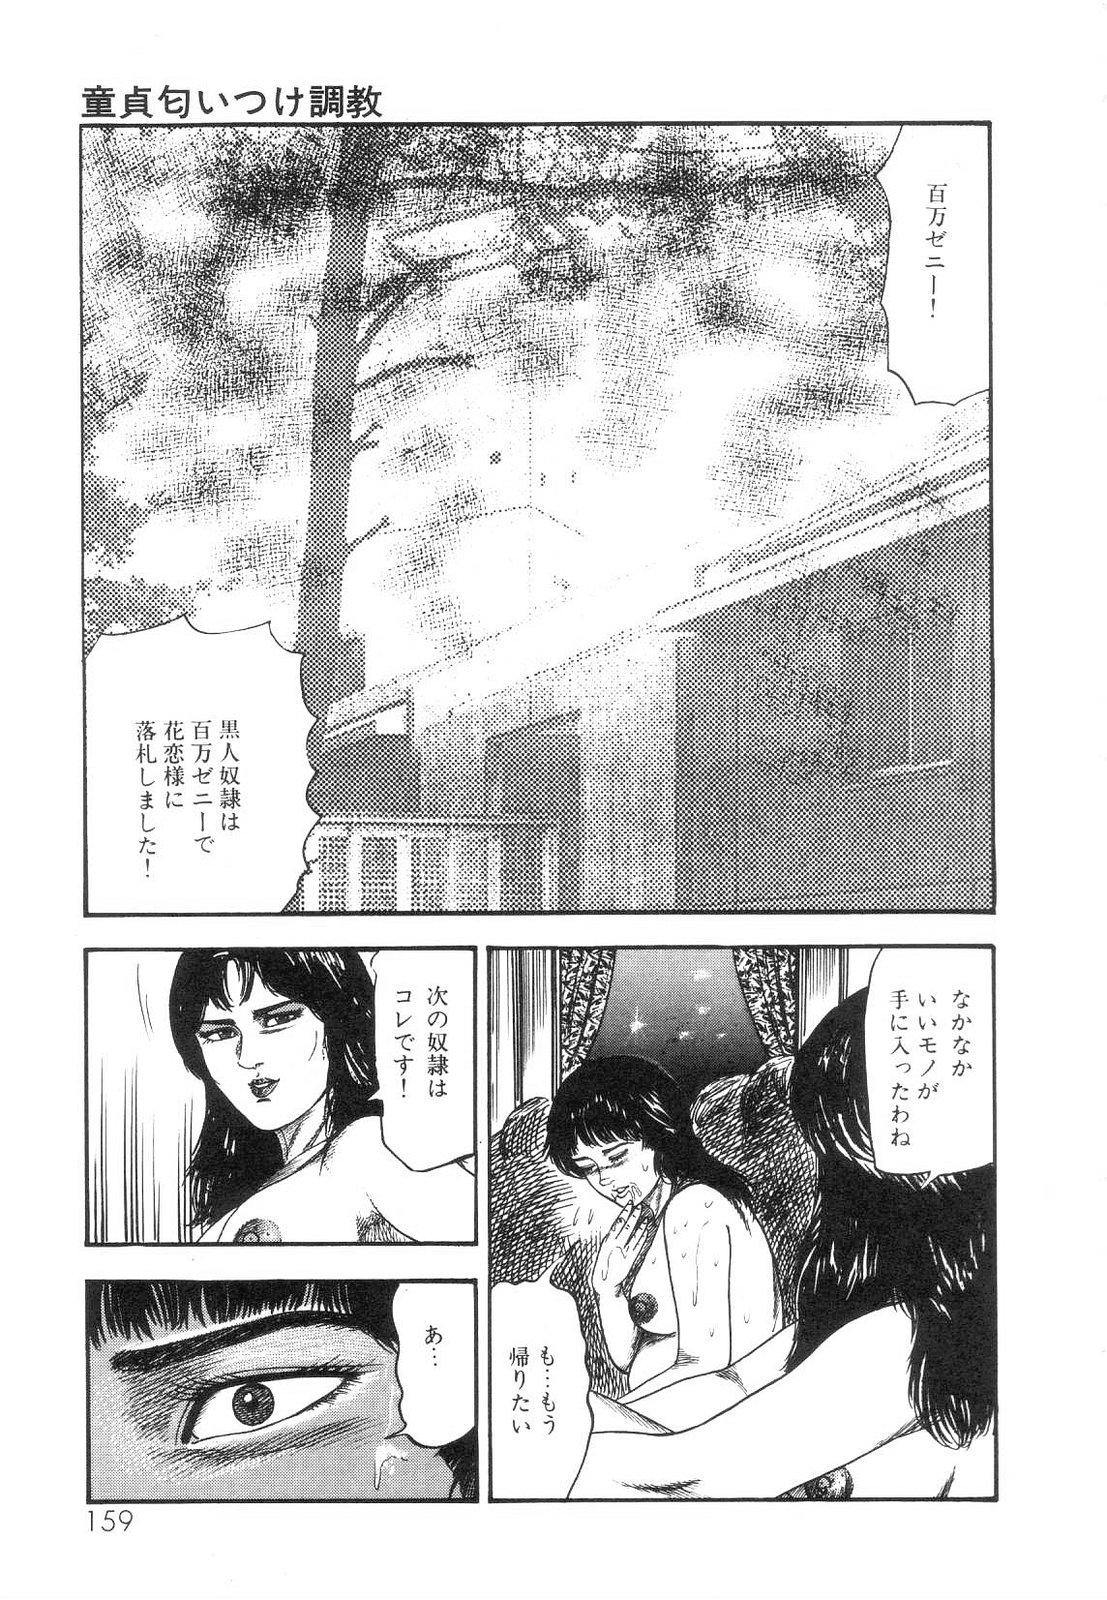 Shiro no Mokushiroku Vol. 5 - Ninshoujo Erika no Shou 160